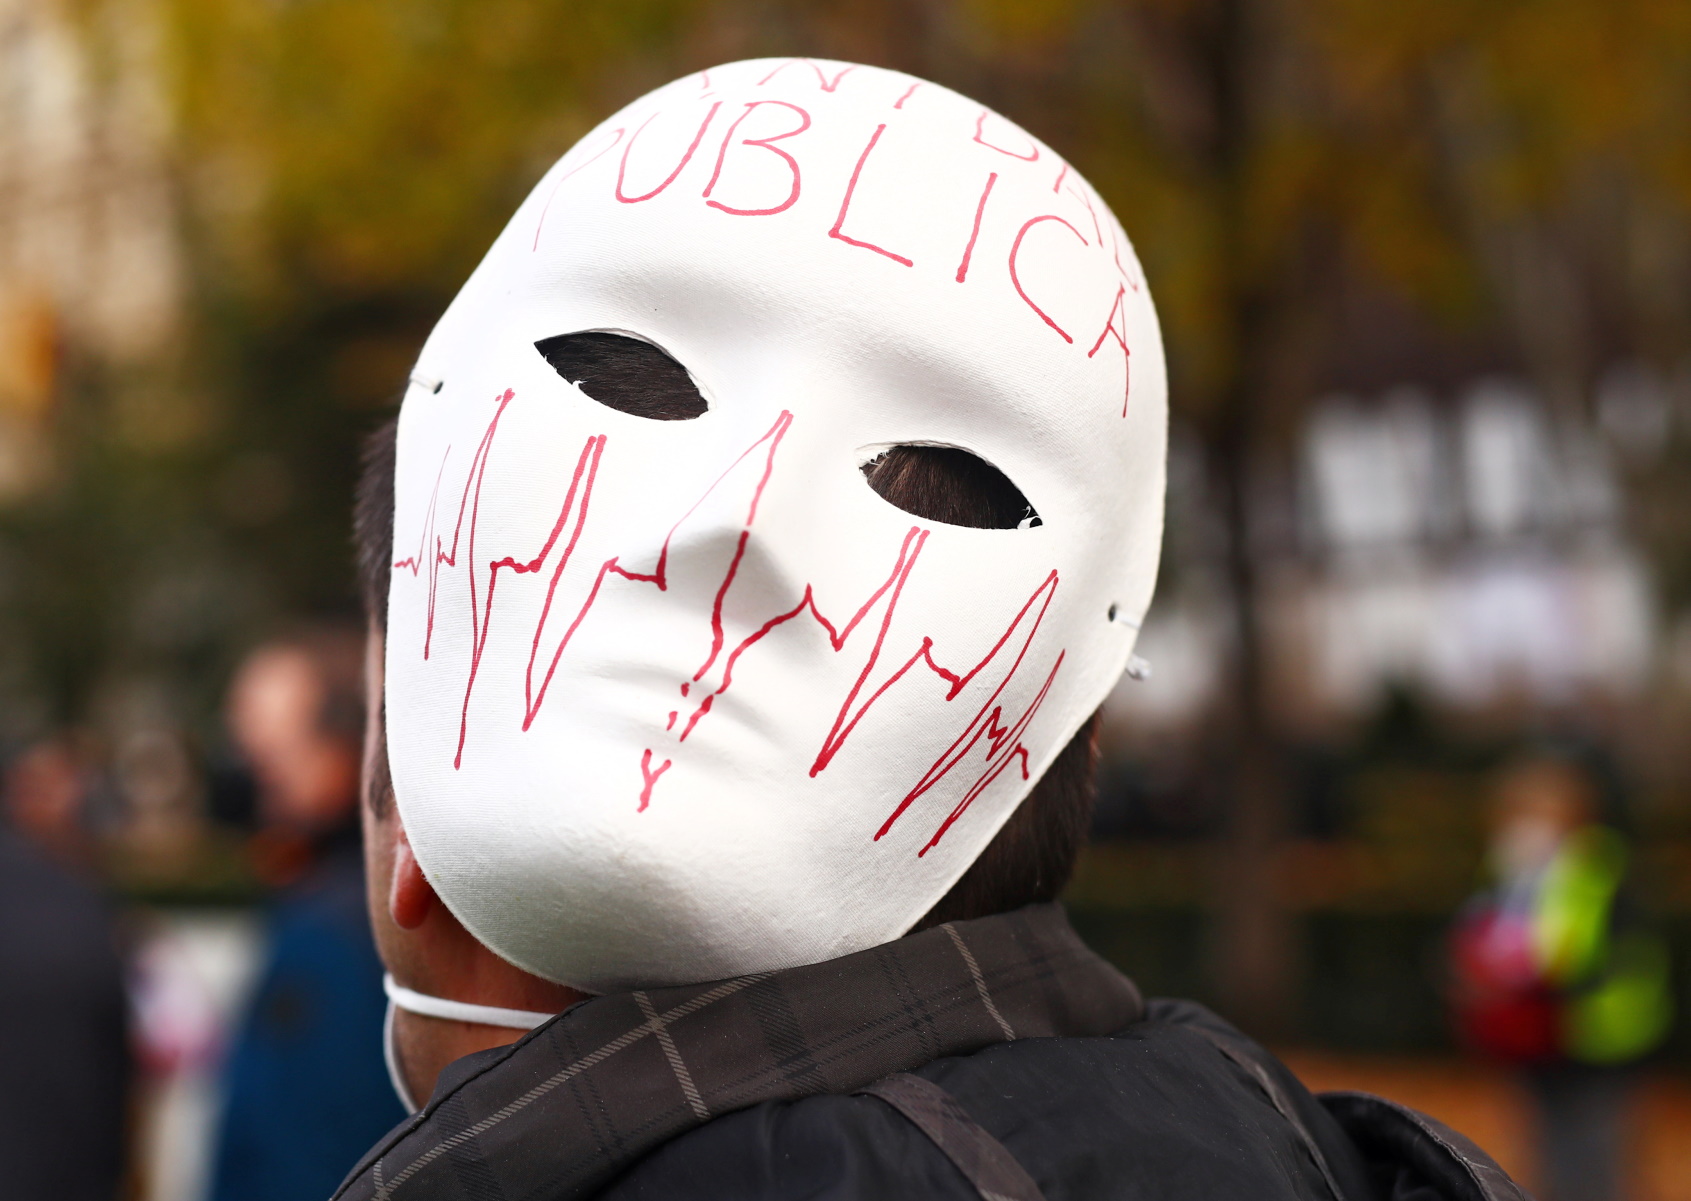 Ισπανία: Διαδήλωση με μάσκες και τύμπανα για τις περικοπές στο σύστημα υγείας (pics)